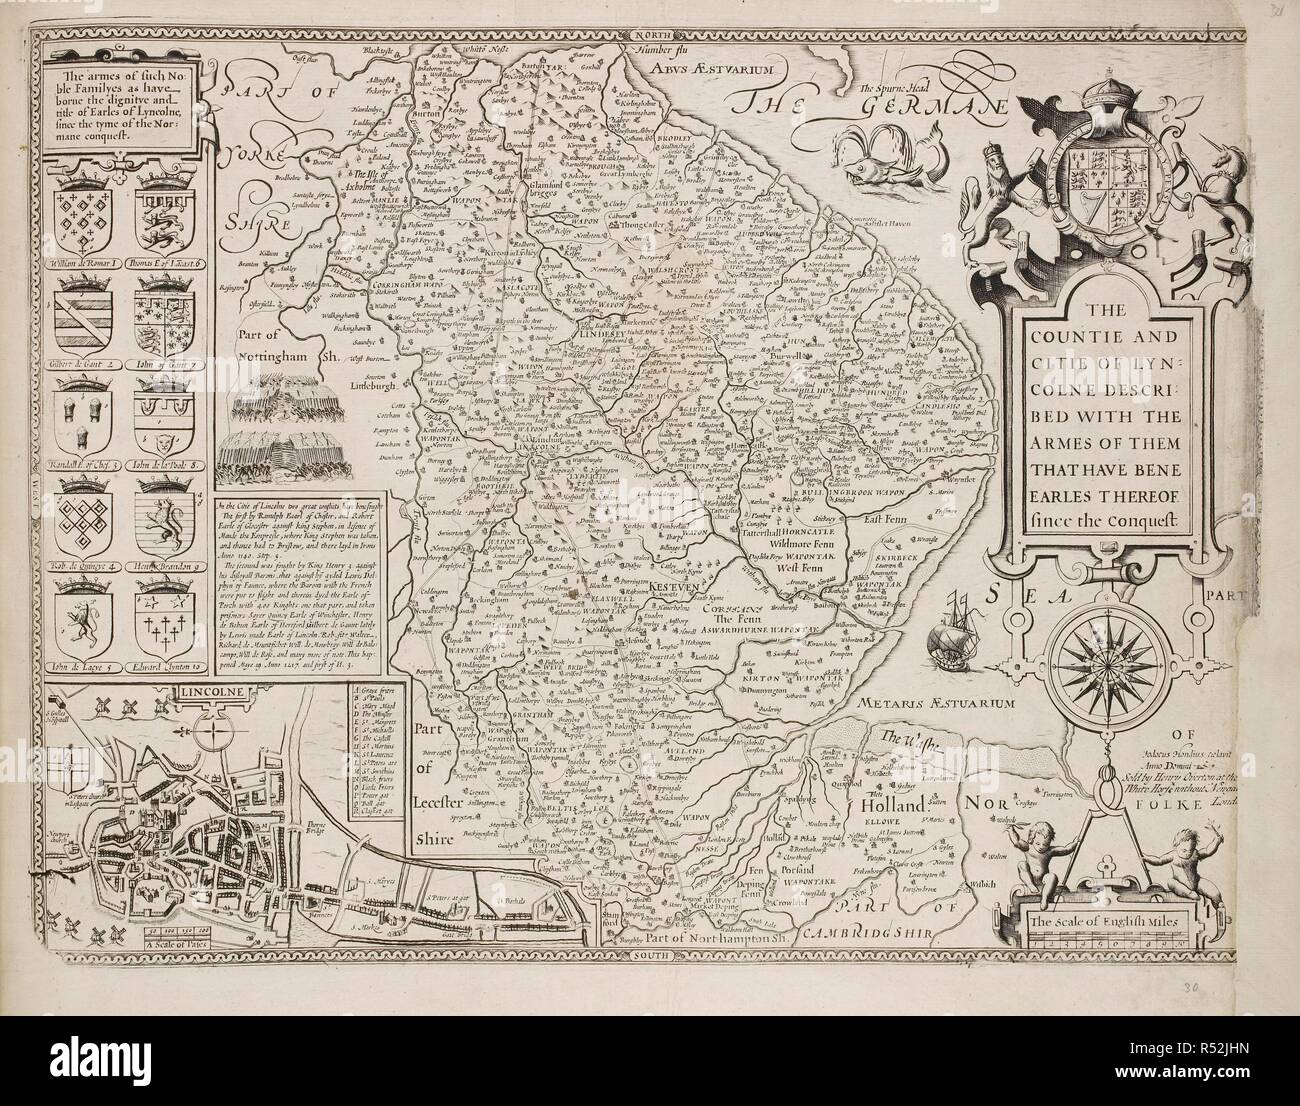 Un mapa del condado de Lincolnshire. Una colección de 37 mapas de los condados de Inglaterra. Londres. H. Overton, 1714. Una colección de 37 mapas de los condados de Inglaterra, siendo las reimpresiones, de J. Speedâ€™s mapas, por Henry Overton, junto con los de P. Stent Reimpreso por John Overton, y mapas de Derbyshire y Yorkshire grabado por S. Nicholls. Fuente: Maps.145.c.9 30. Idioma: Inglés. Foto de stock